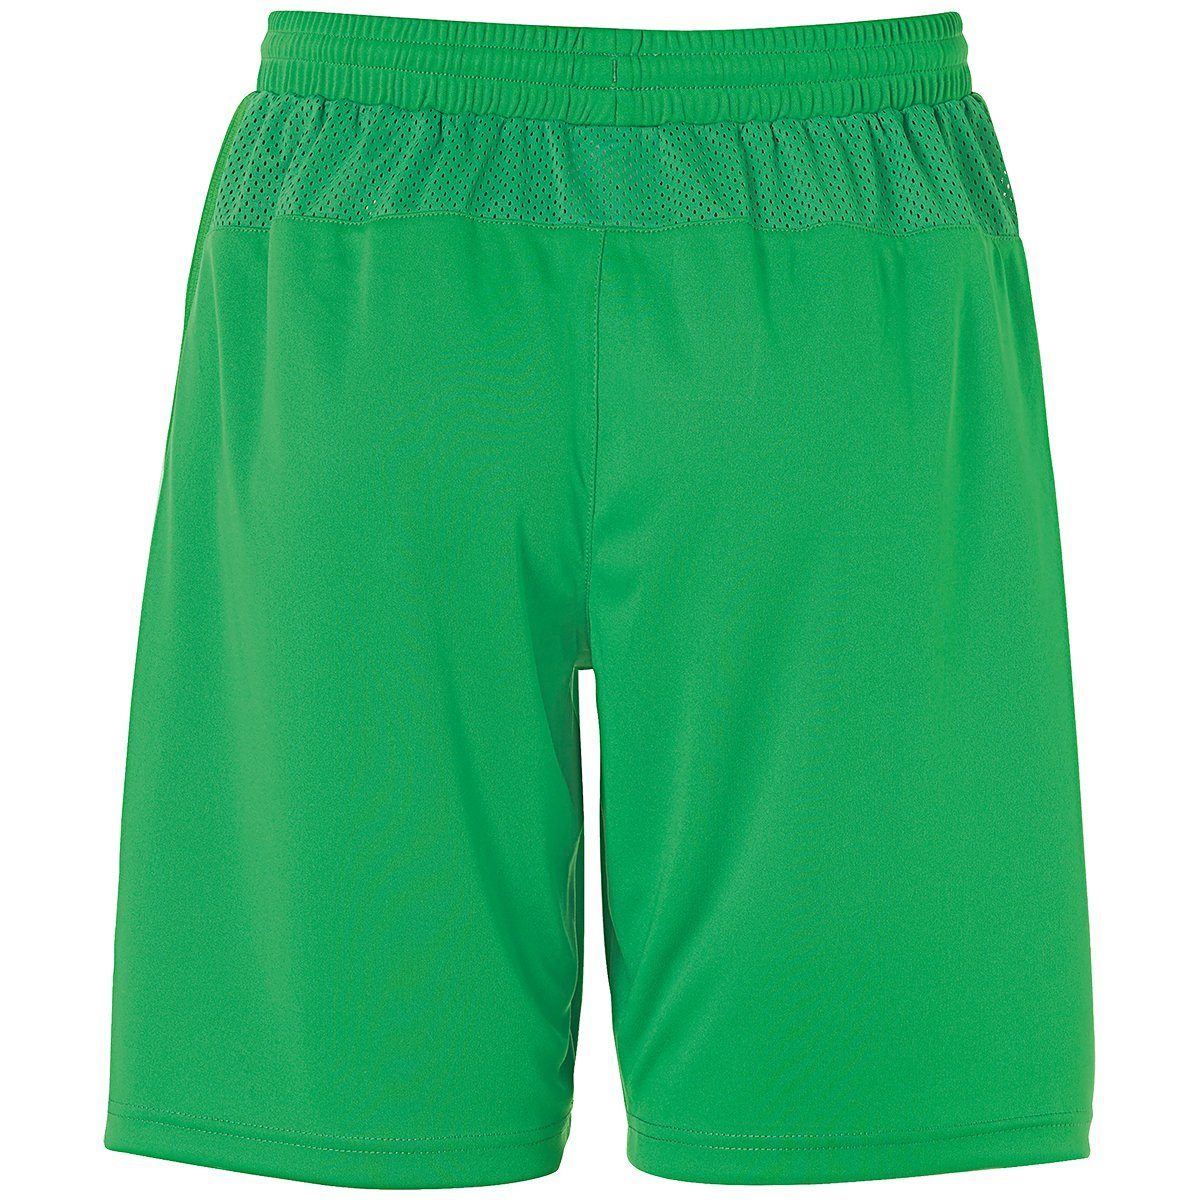 uhlsport Shorts uhlsport PERFORMANCE Shorts grün/weiß SHORTS